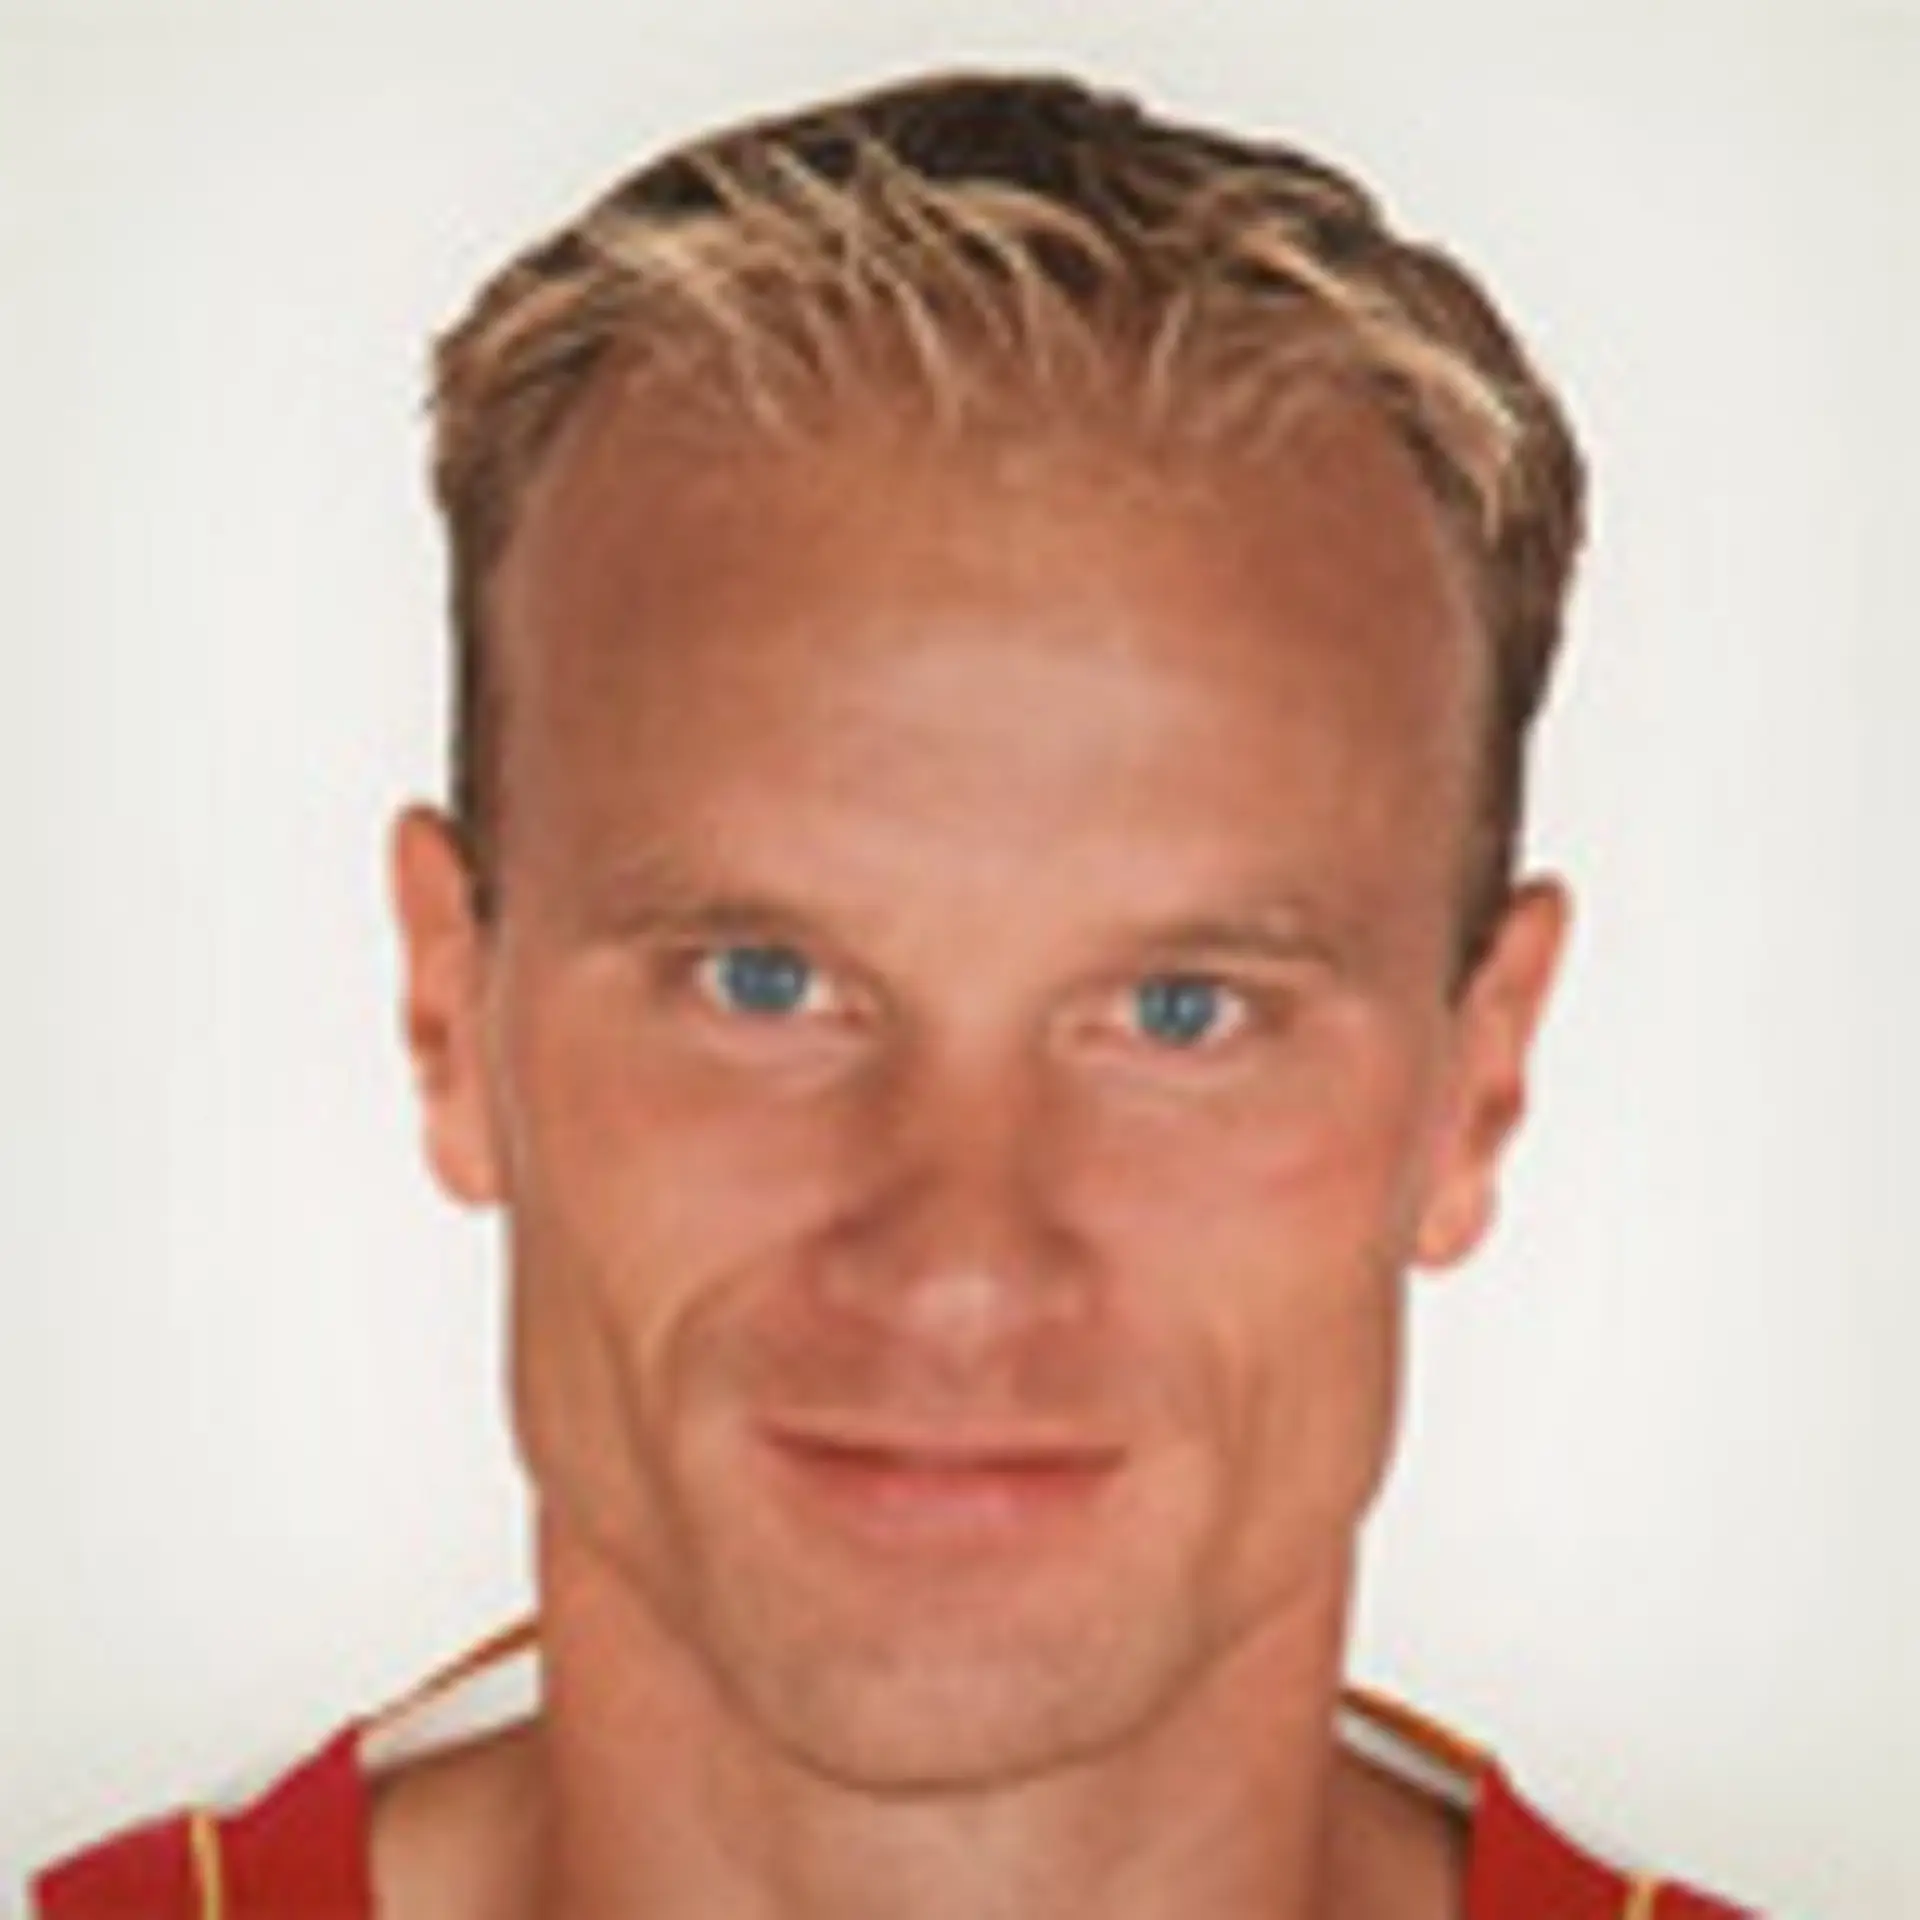 Dennis Bergkamp